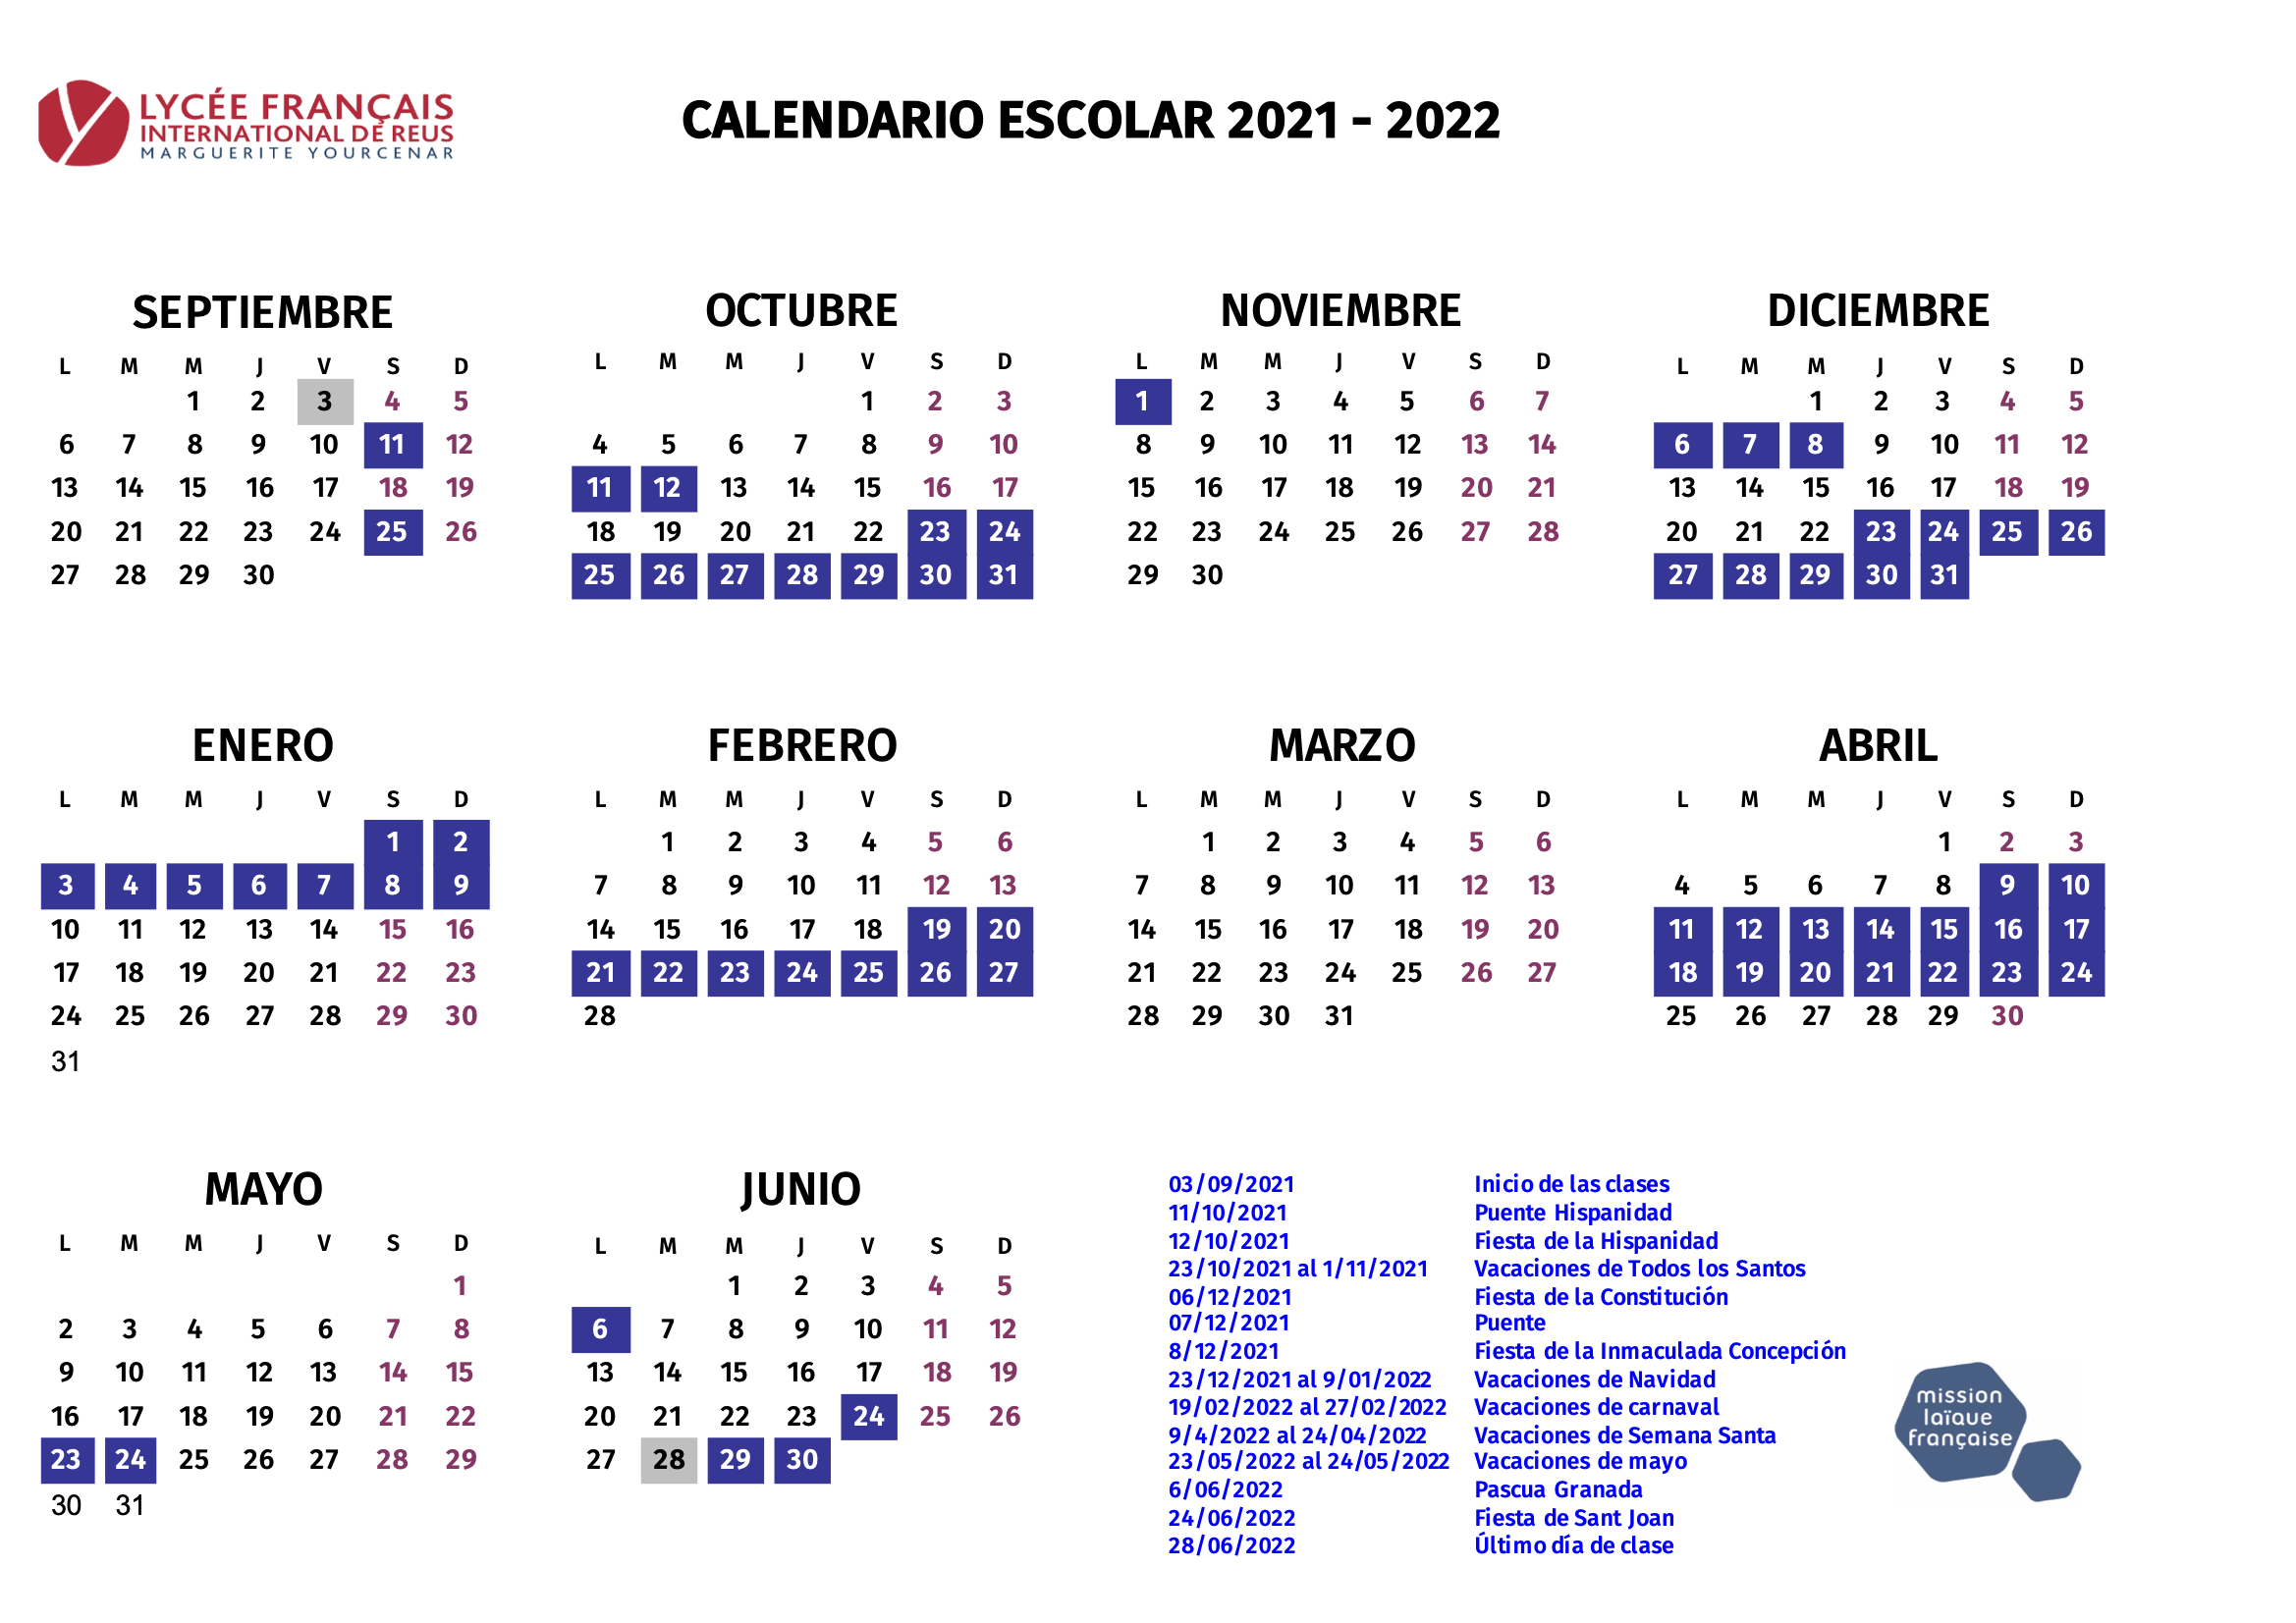 Calendario escolar de Colegio francés internacional de Reus